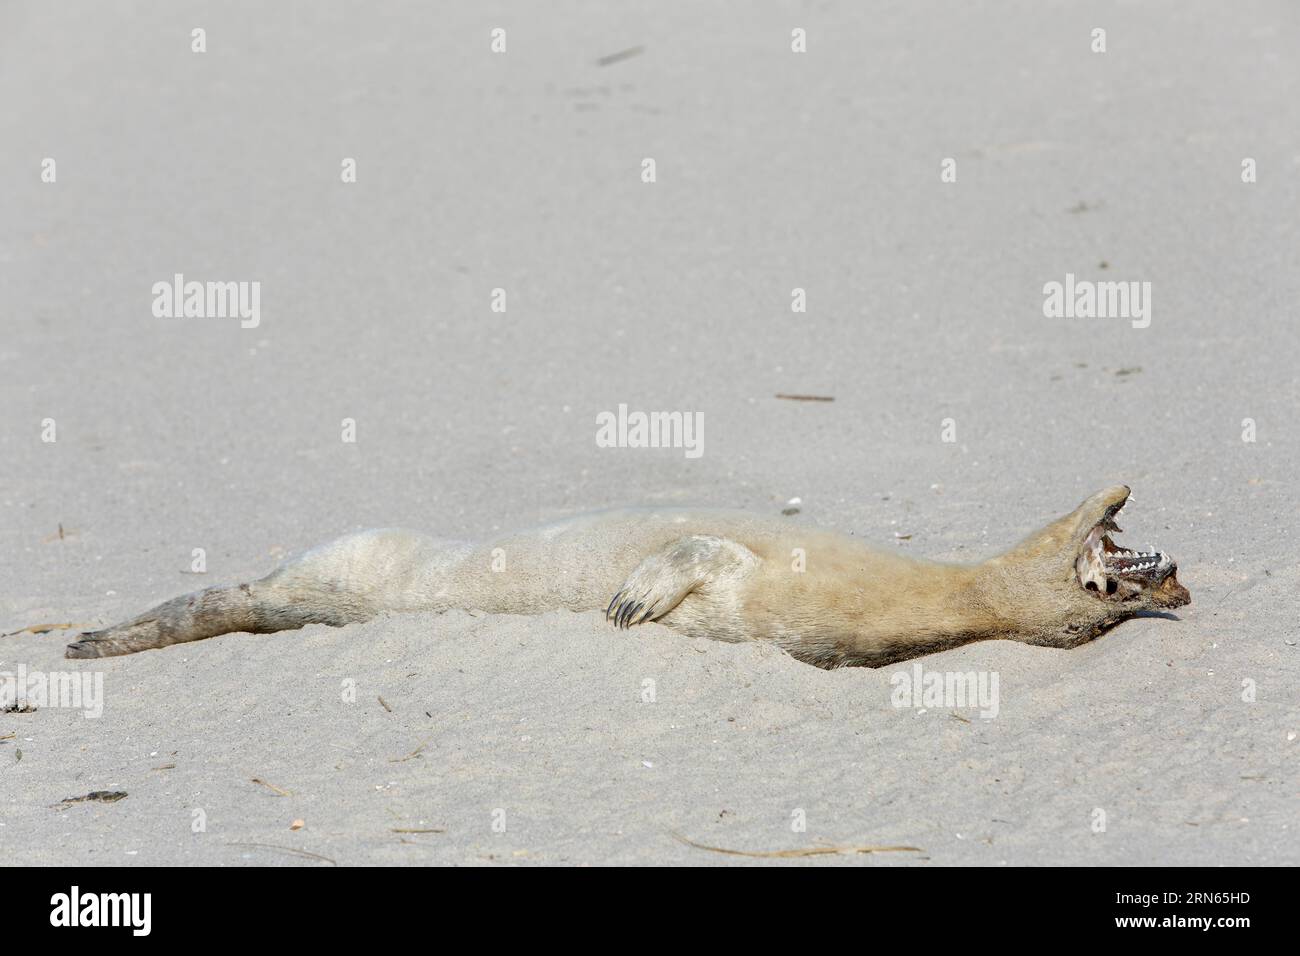 Foca común de puerto (Phoca vitulina), encontrada muerta en la playa, muerta, cadáver momificado después de tres semanas de exposición a la luz solar, Baja Sajonia Foto de stock